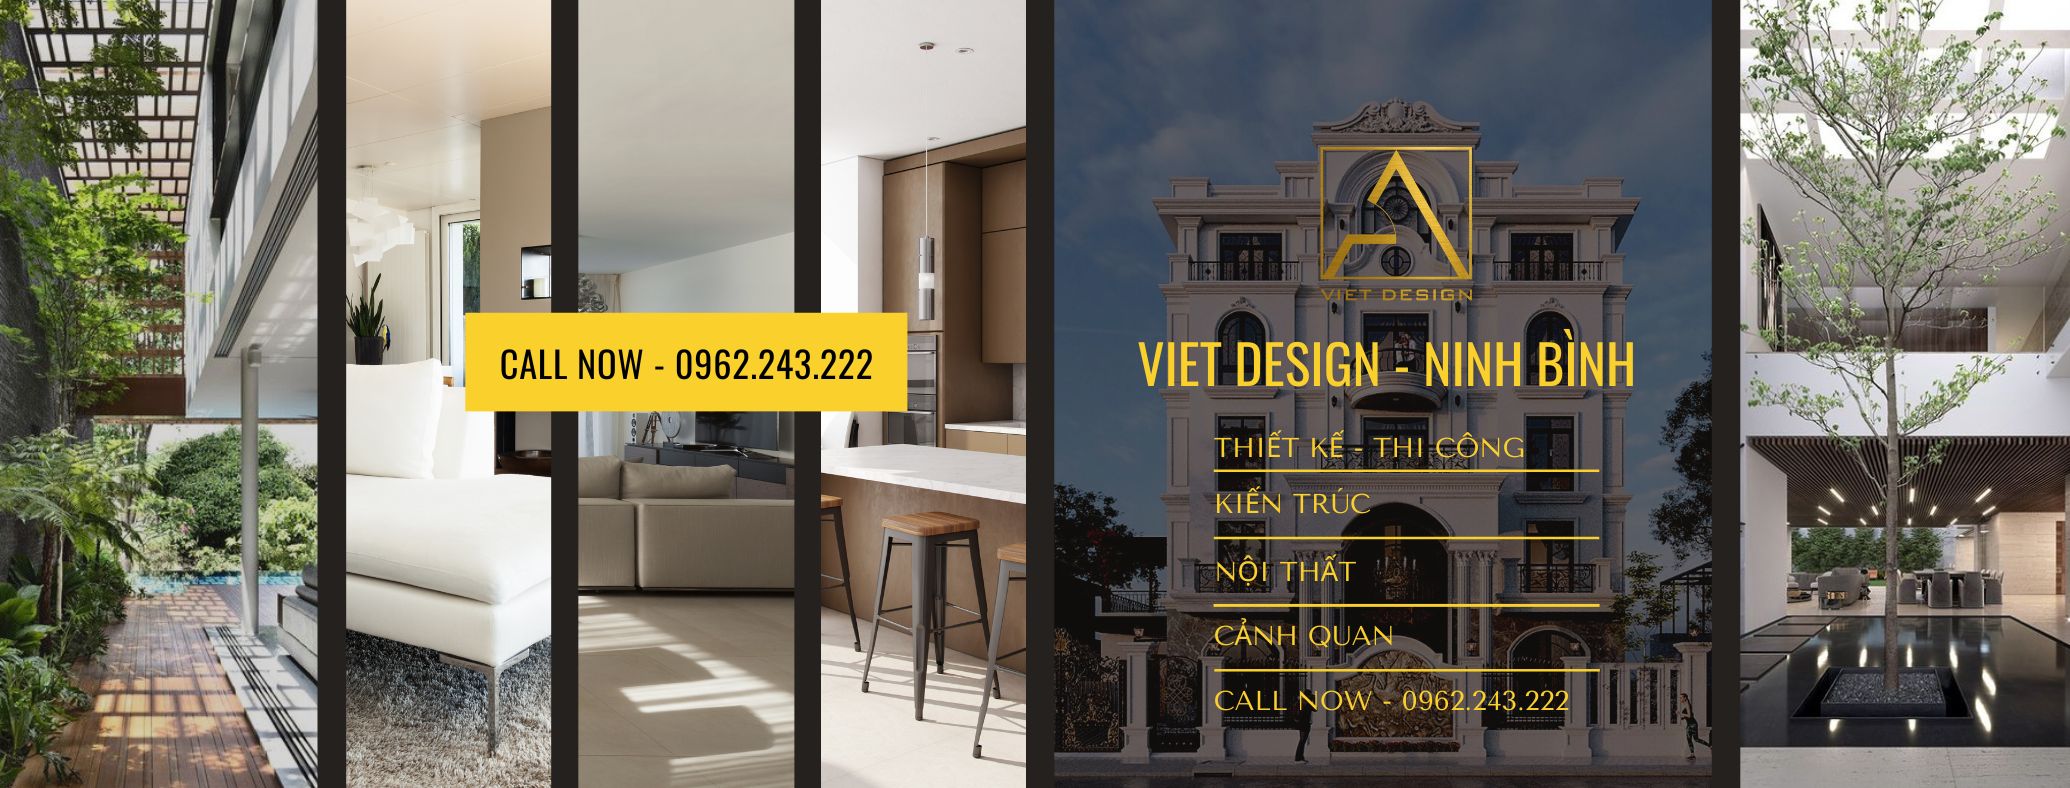 Viet Design - Thiết Kế Nhà Đẹp Ninh Bình ảnh 1